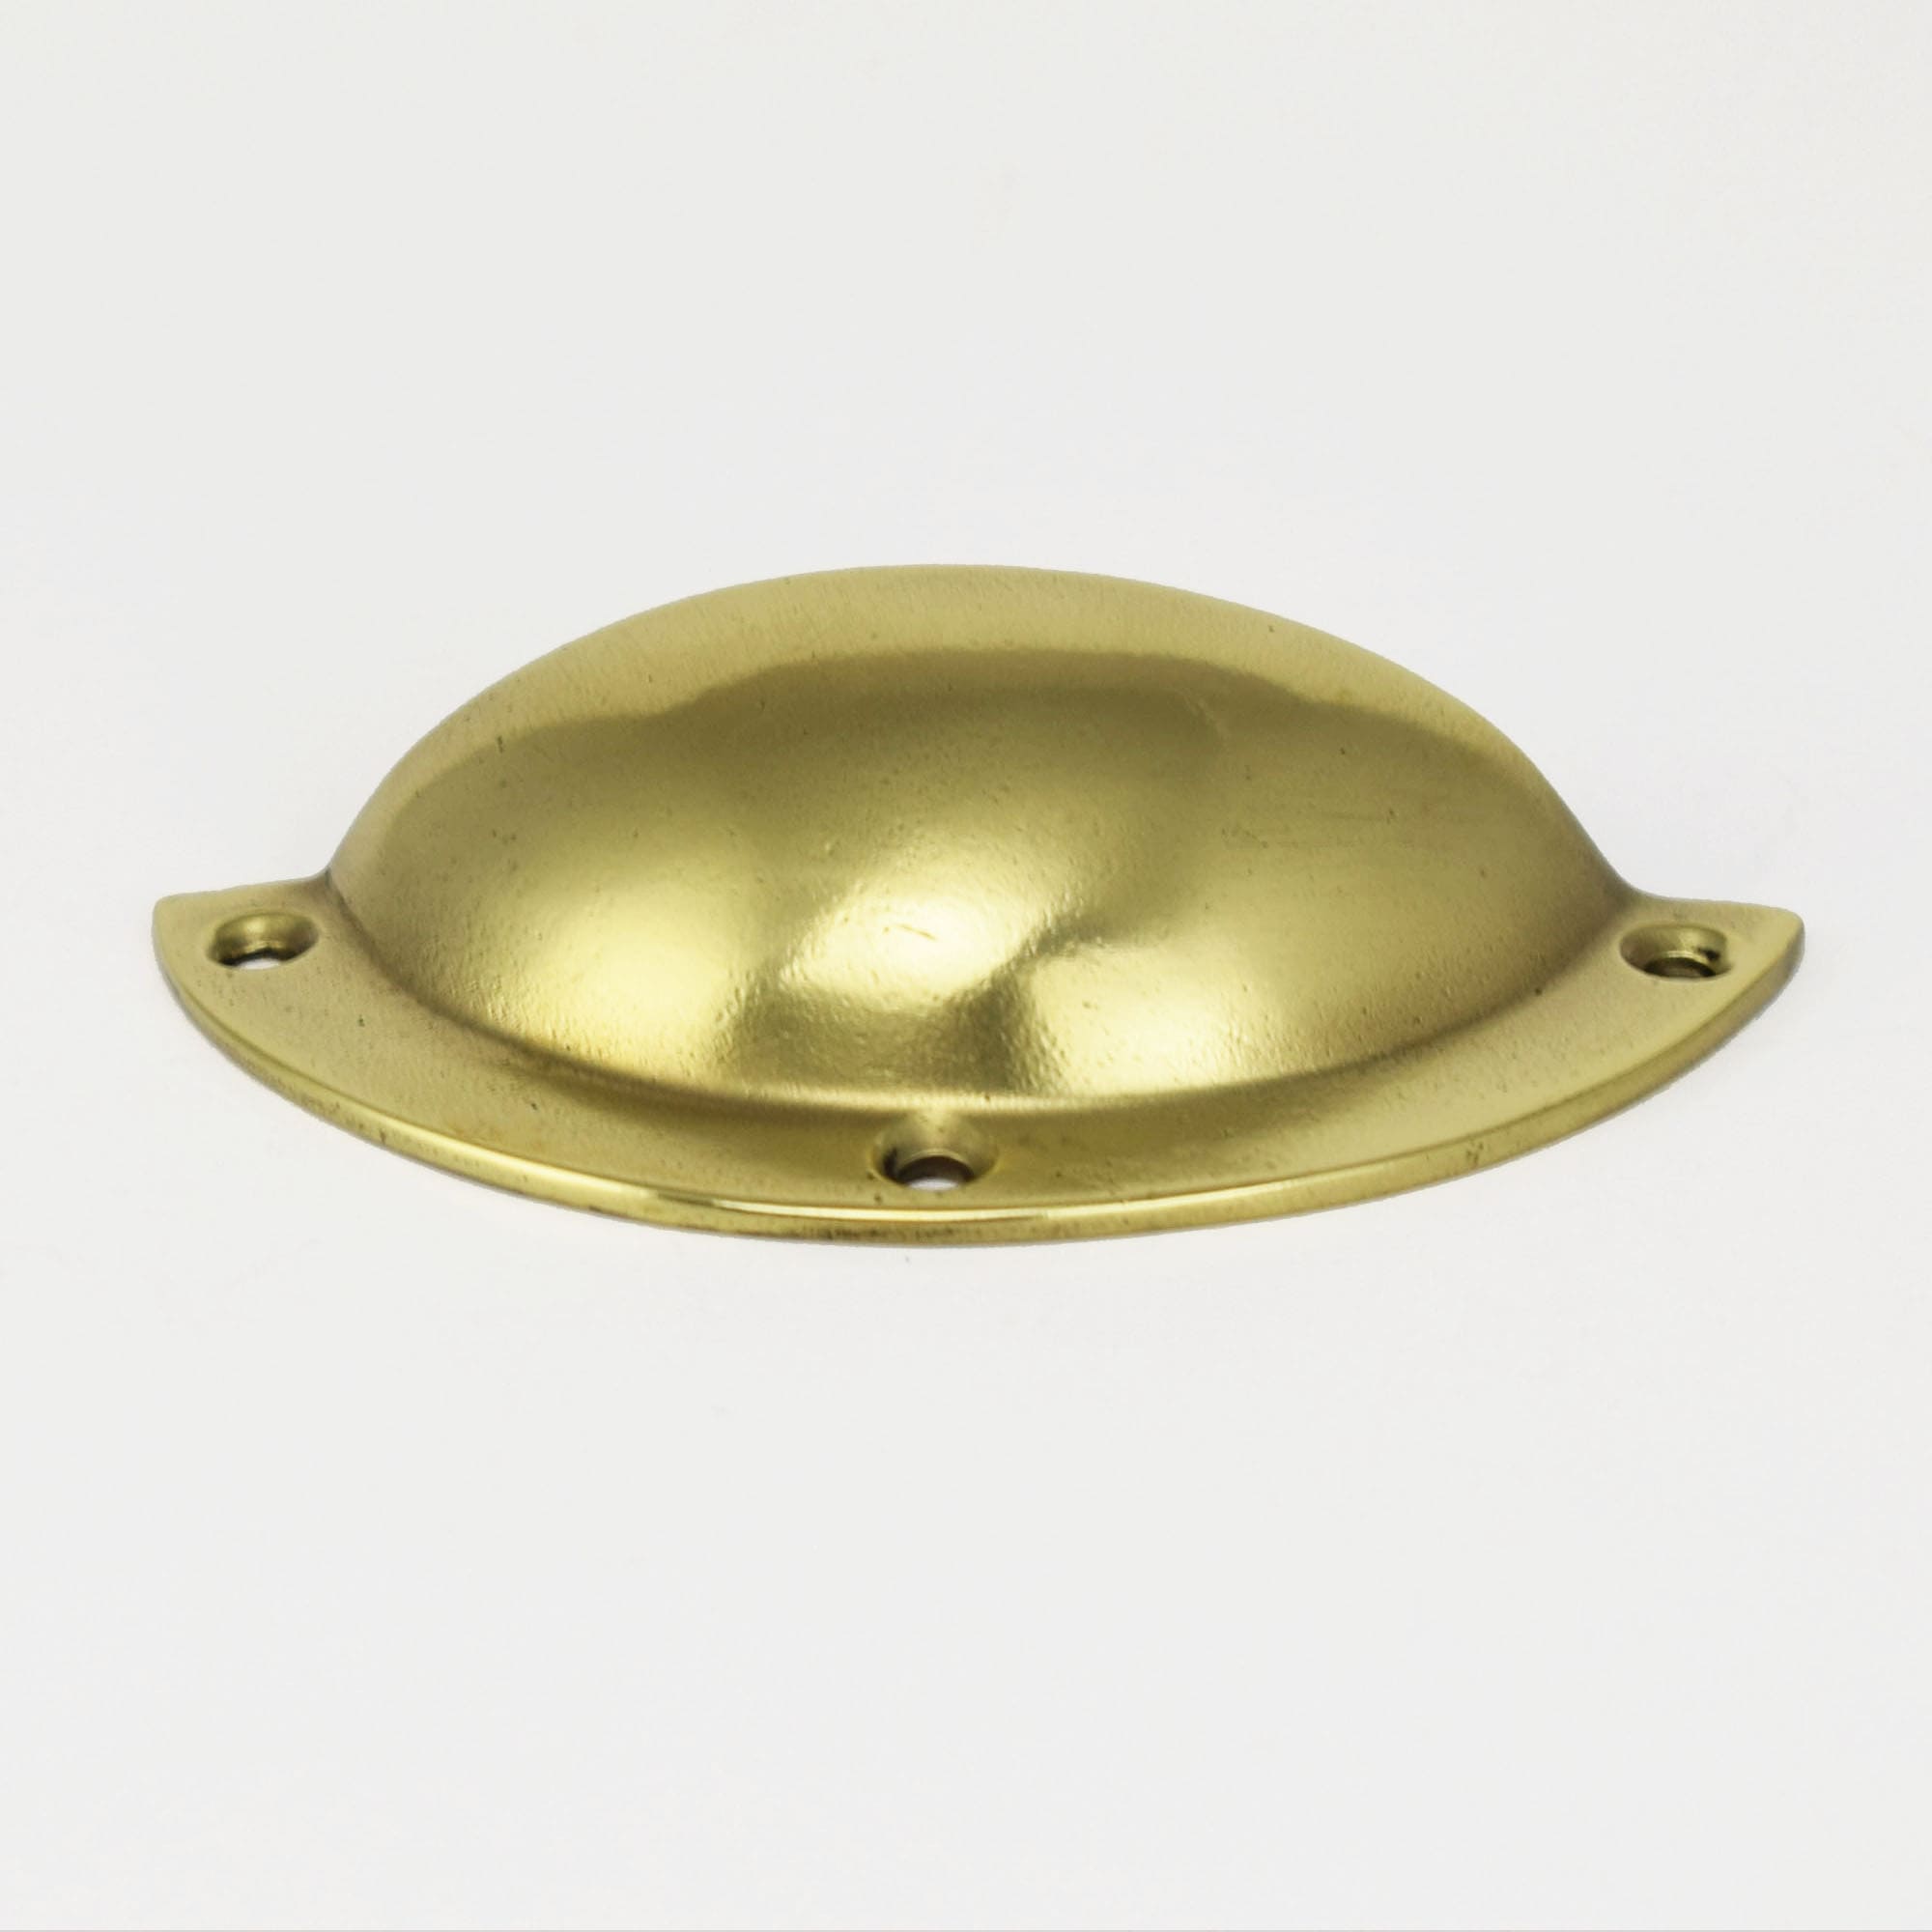 Brass Classic Cup Handle - Proper Copper Design